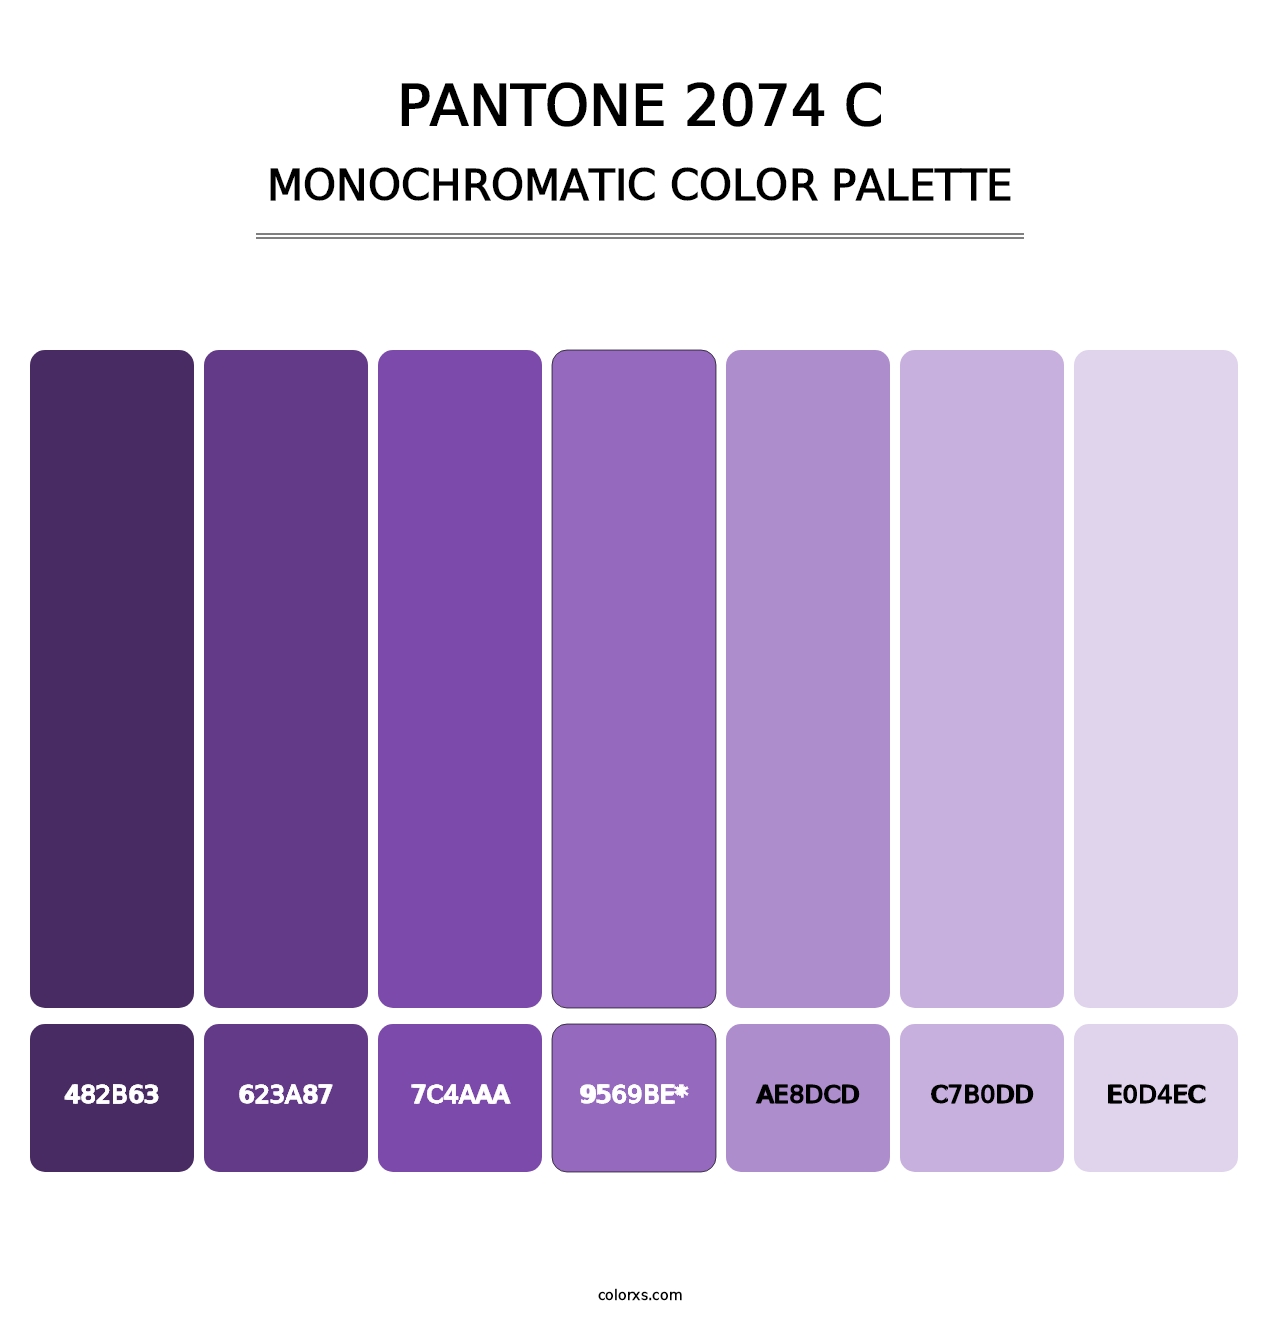 PANTONE 2074 C - Monochromatic Color Palette